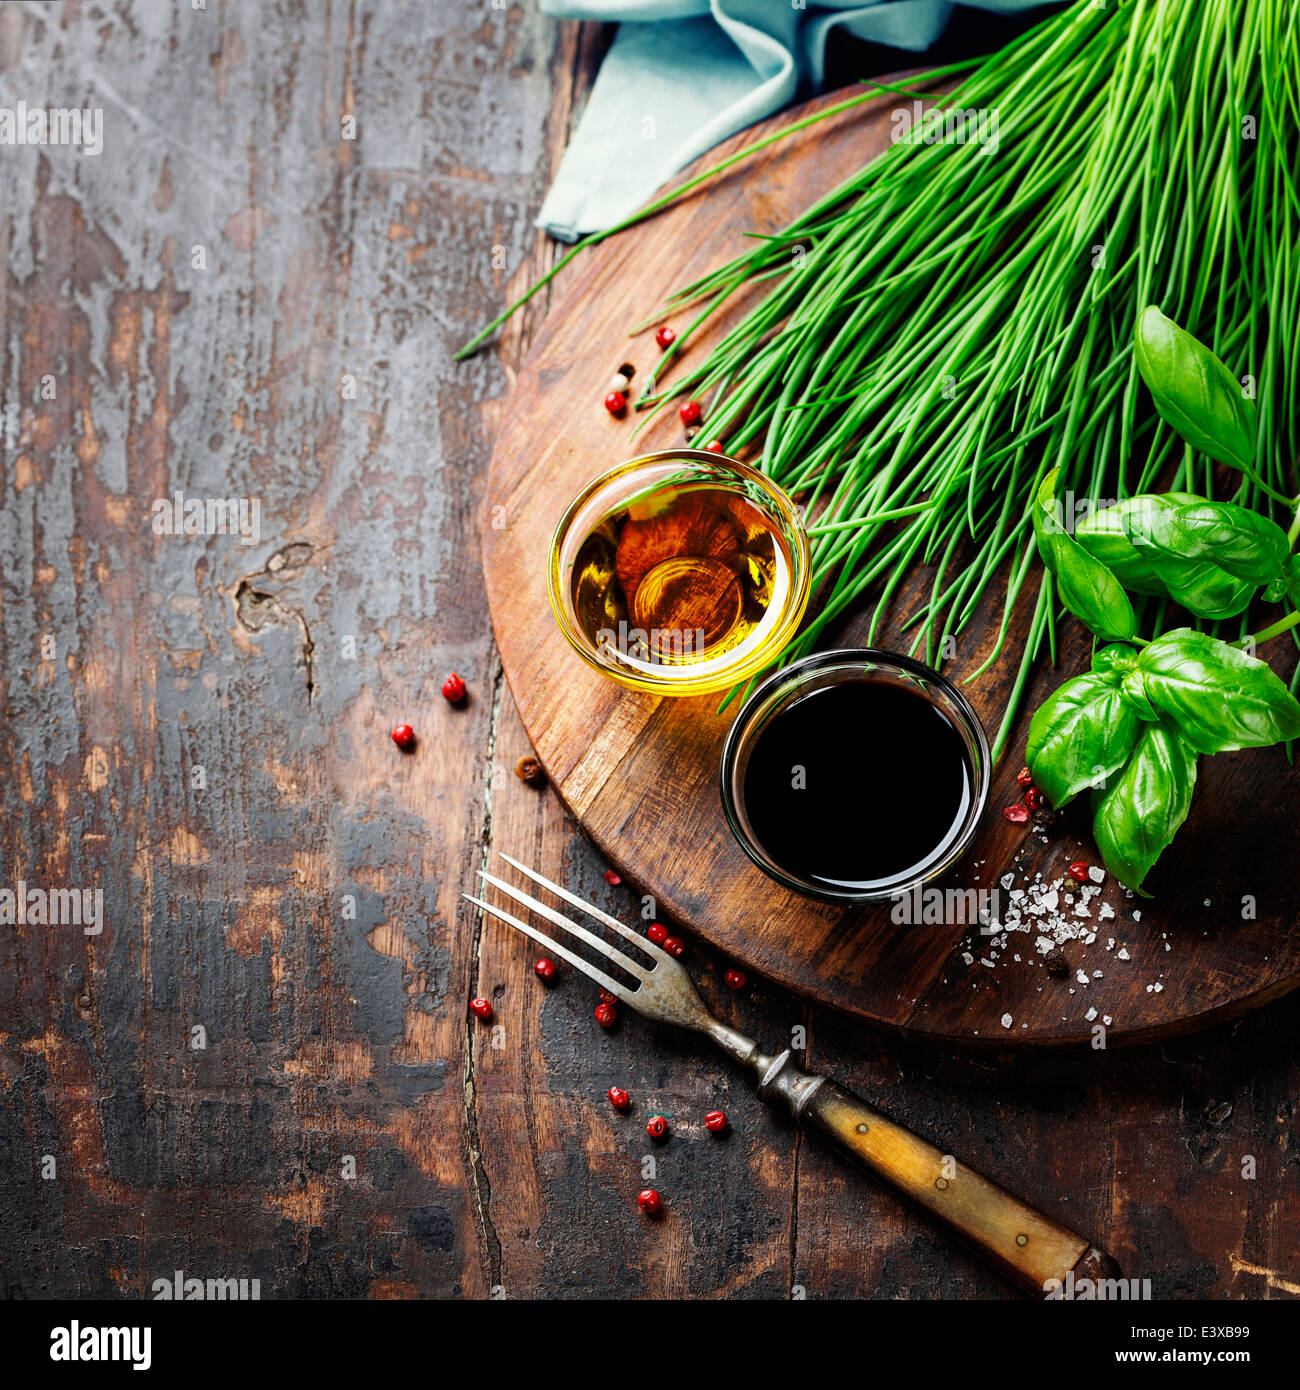 Erbe e spezie su tavola di legno - cottura, sano o cibo vegetariano concept Foto Stock